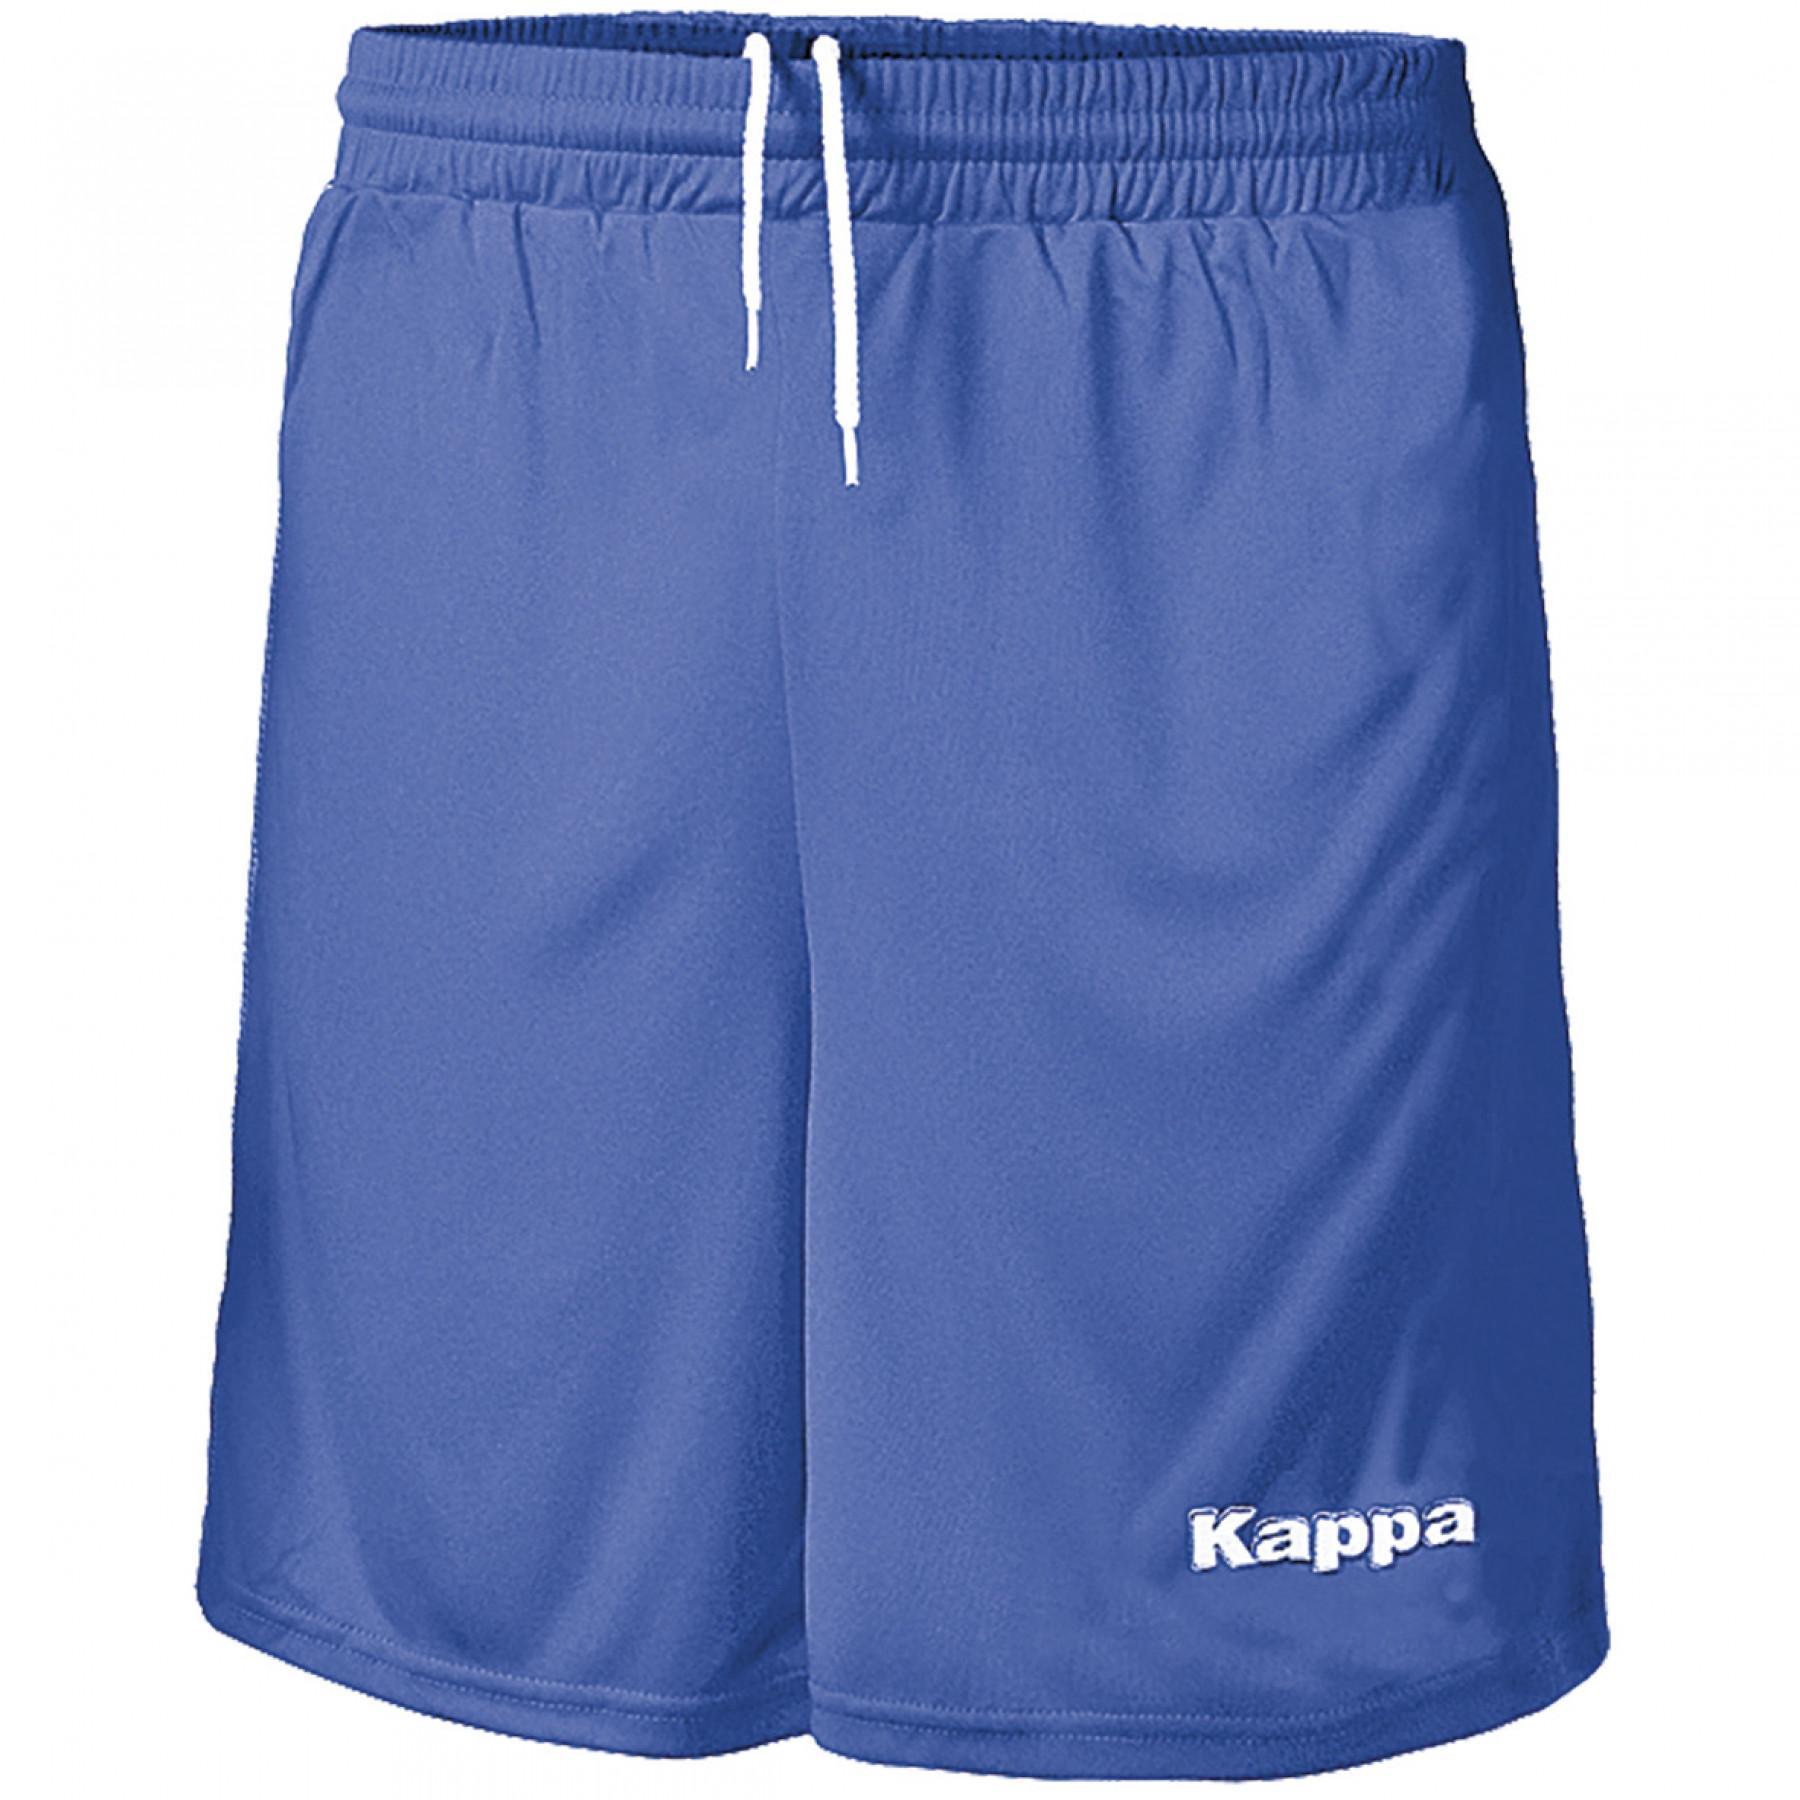 Kinder shorts Kappa Ribolla